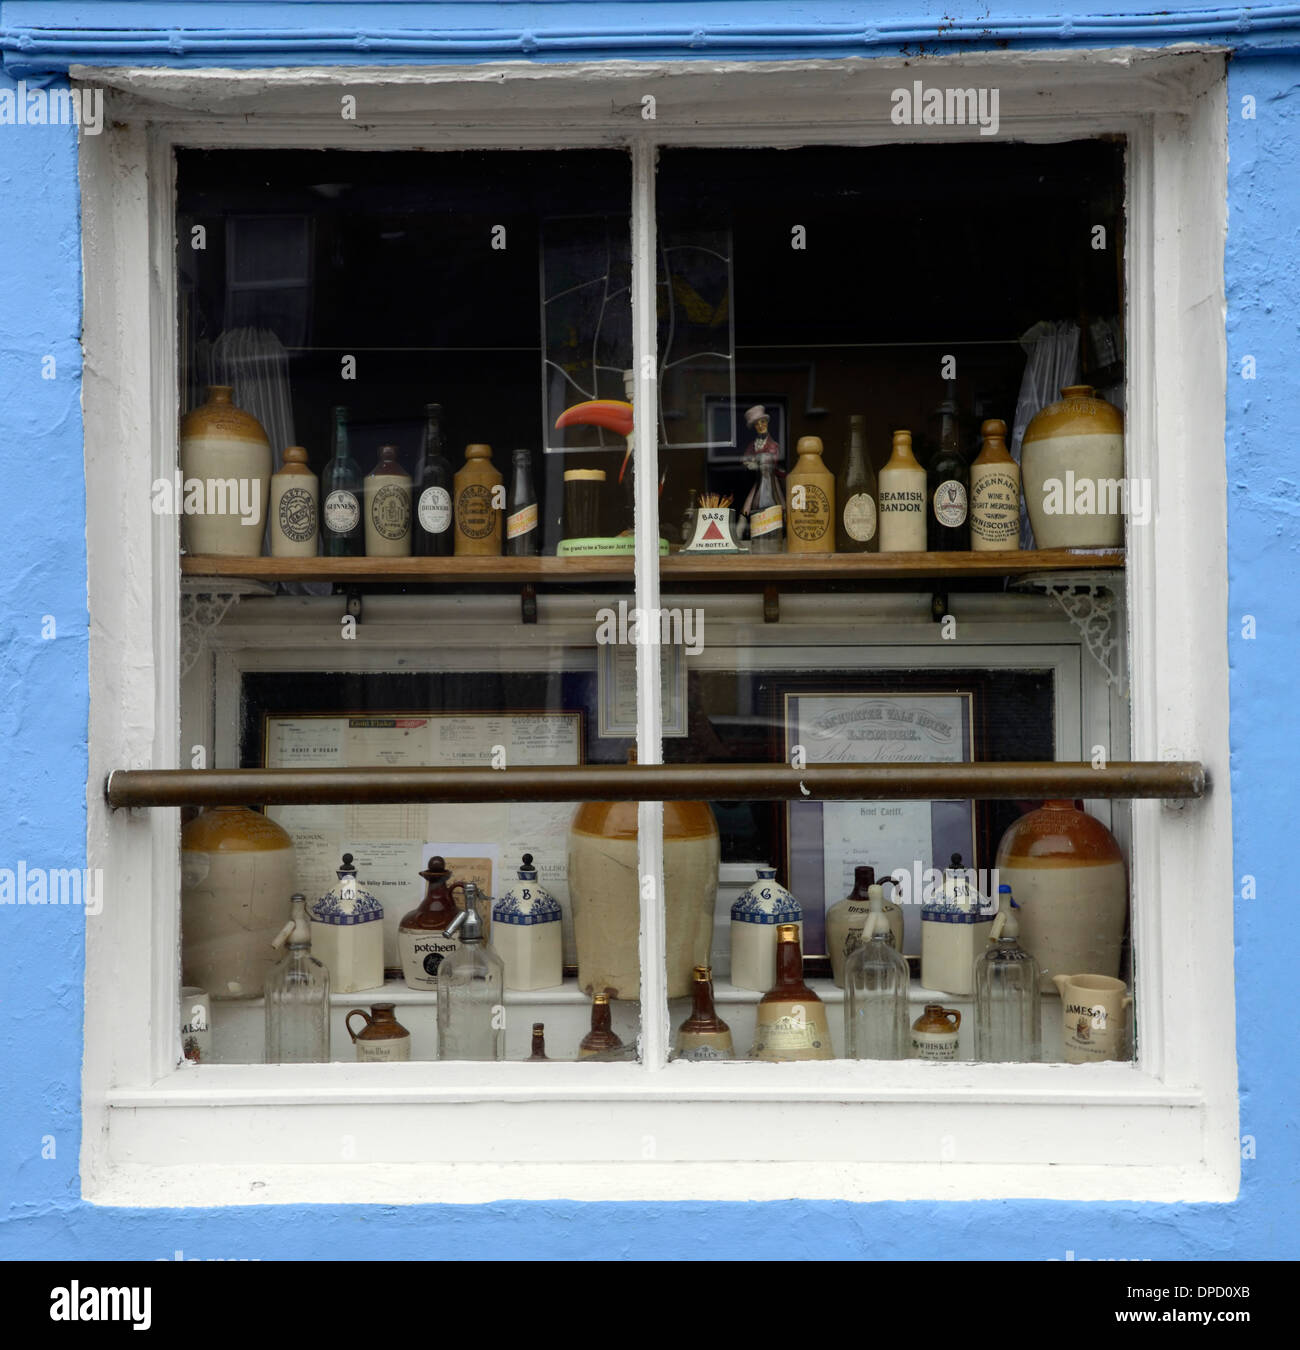 Irland irische Tradition Traditionskneipe Fenster Ladenfront lizenziert Räumlichkeiten Stockfoto